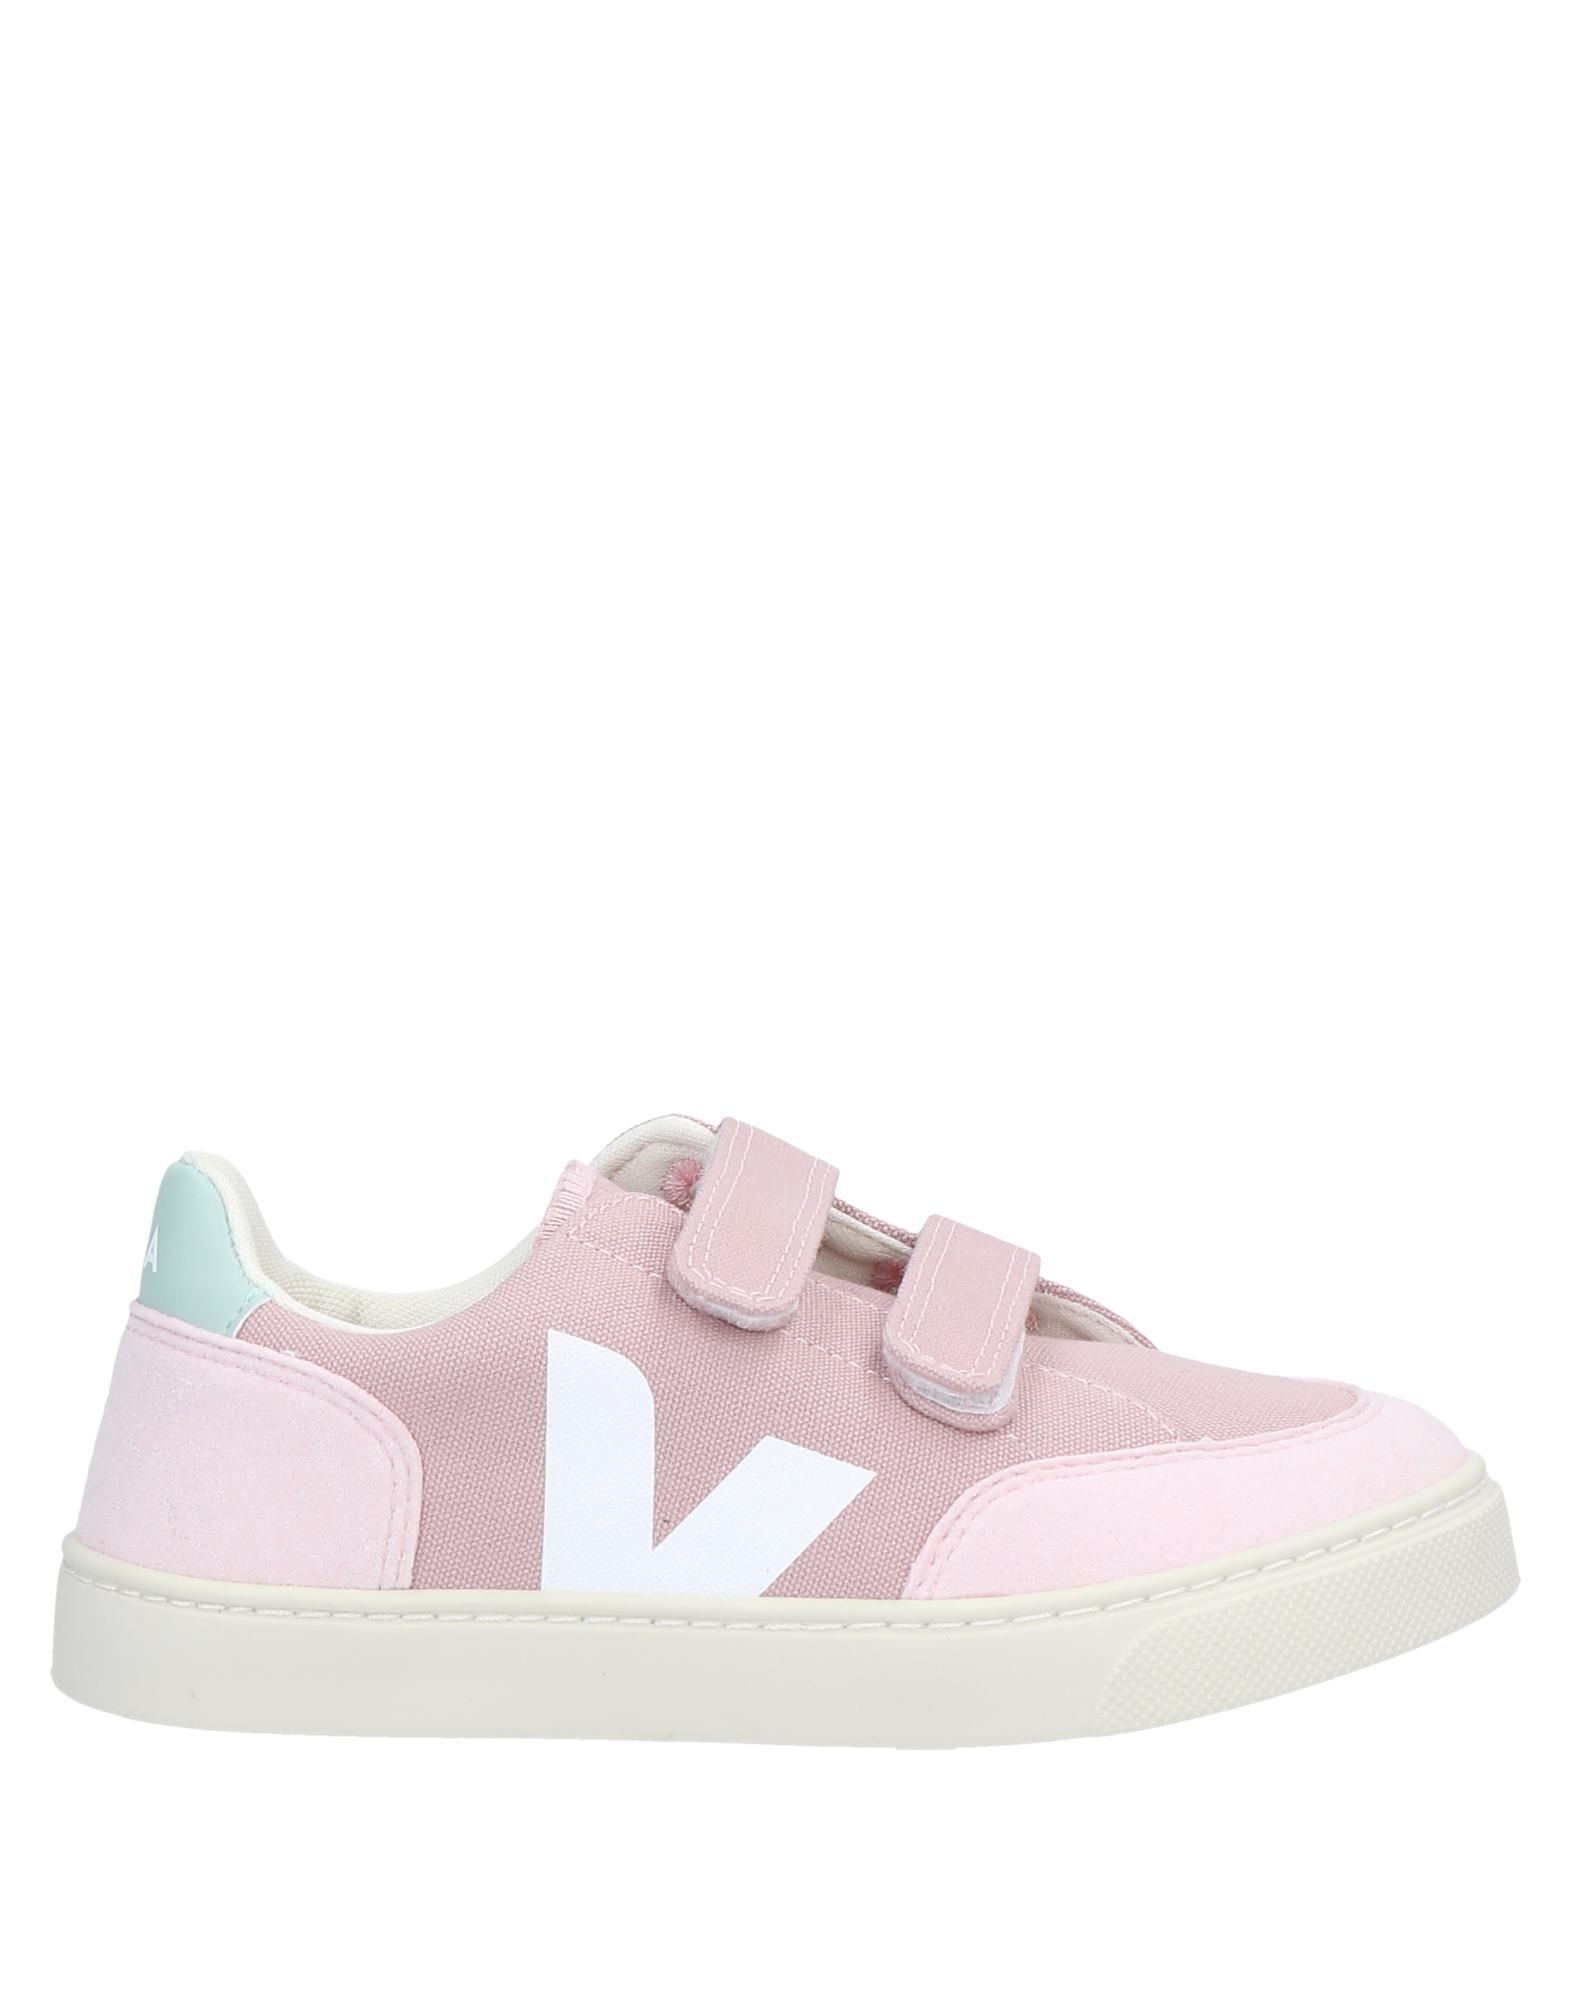 Veja Kids' Sneakers In Pastel Pink